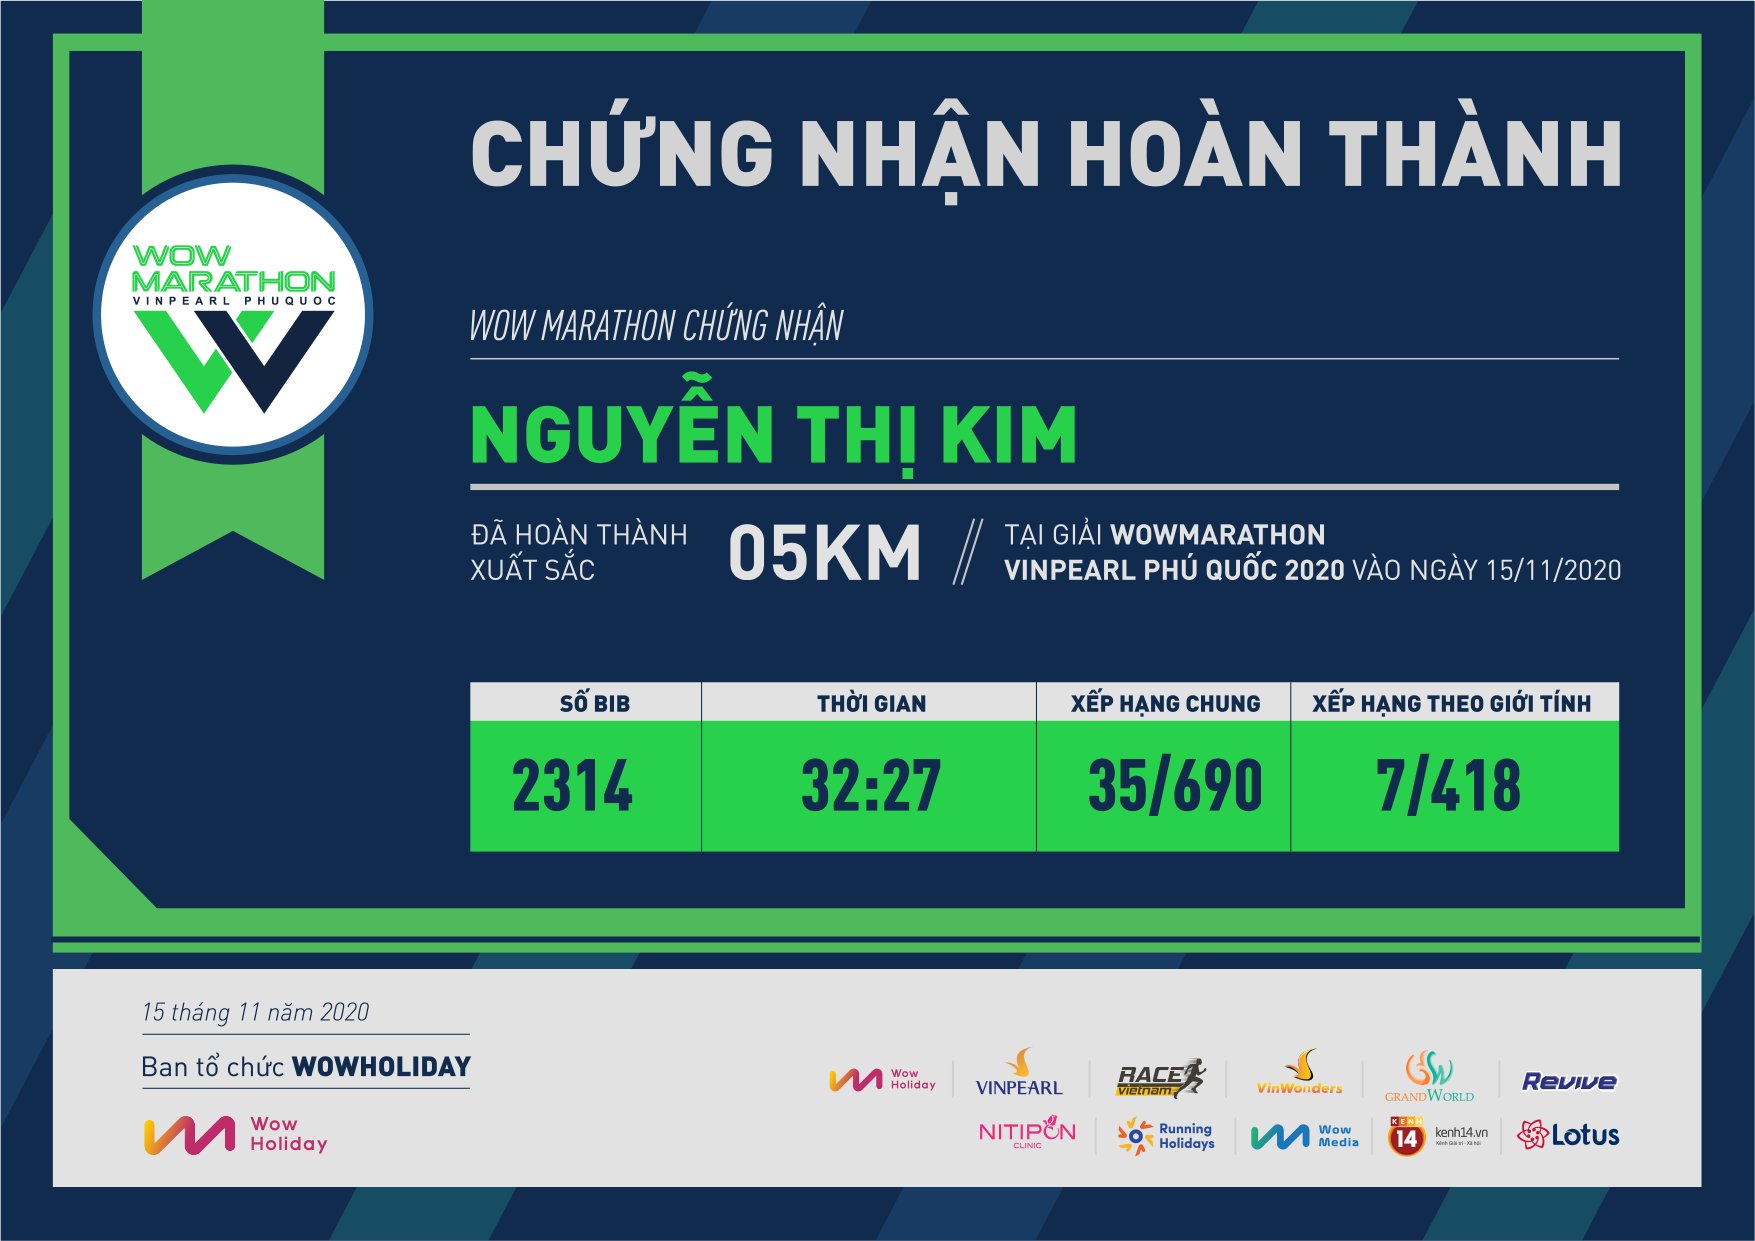 2314 - Nguyễn Thị Kim